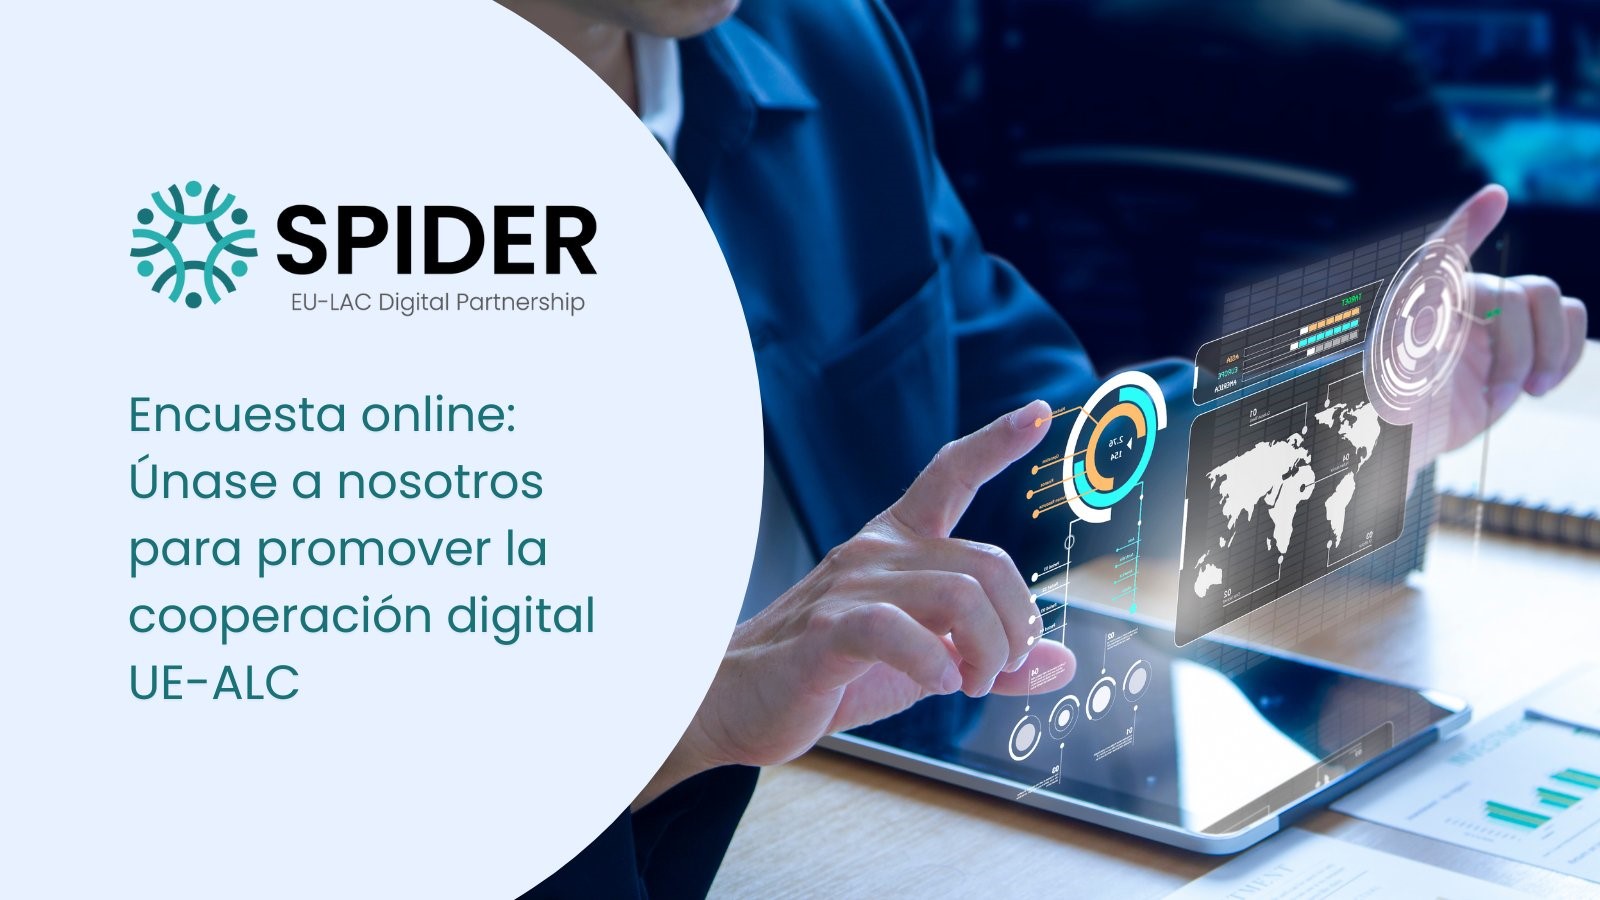 Proyecto SPIDER lanza encuesta sobre la interconectividad del ecosistema digital en América Latina y el Caribe y la UE